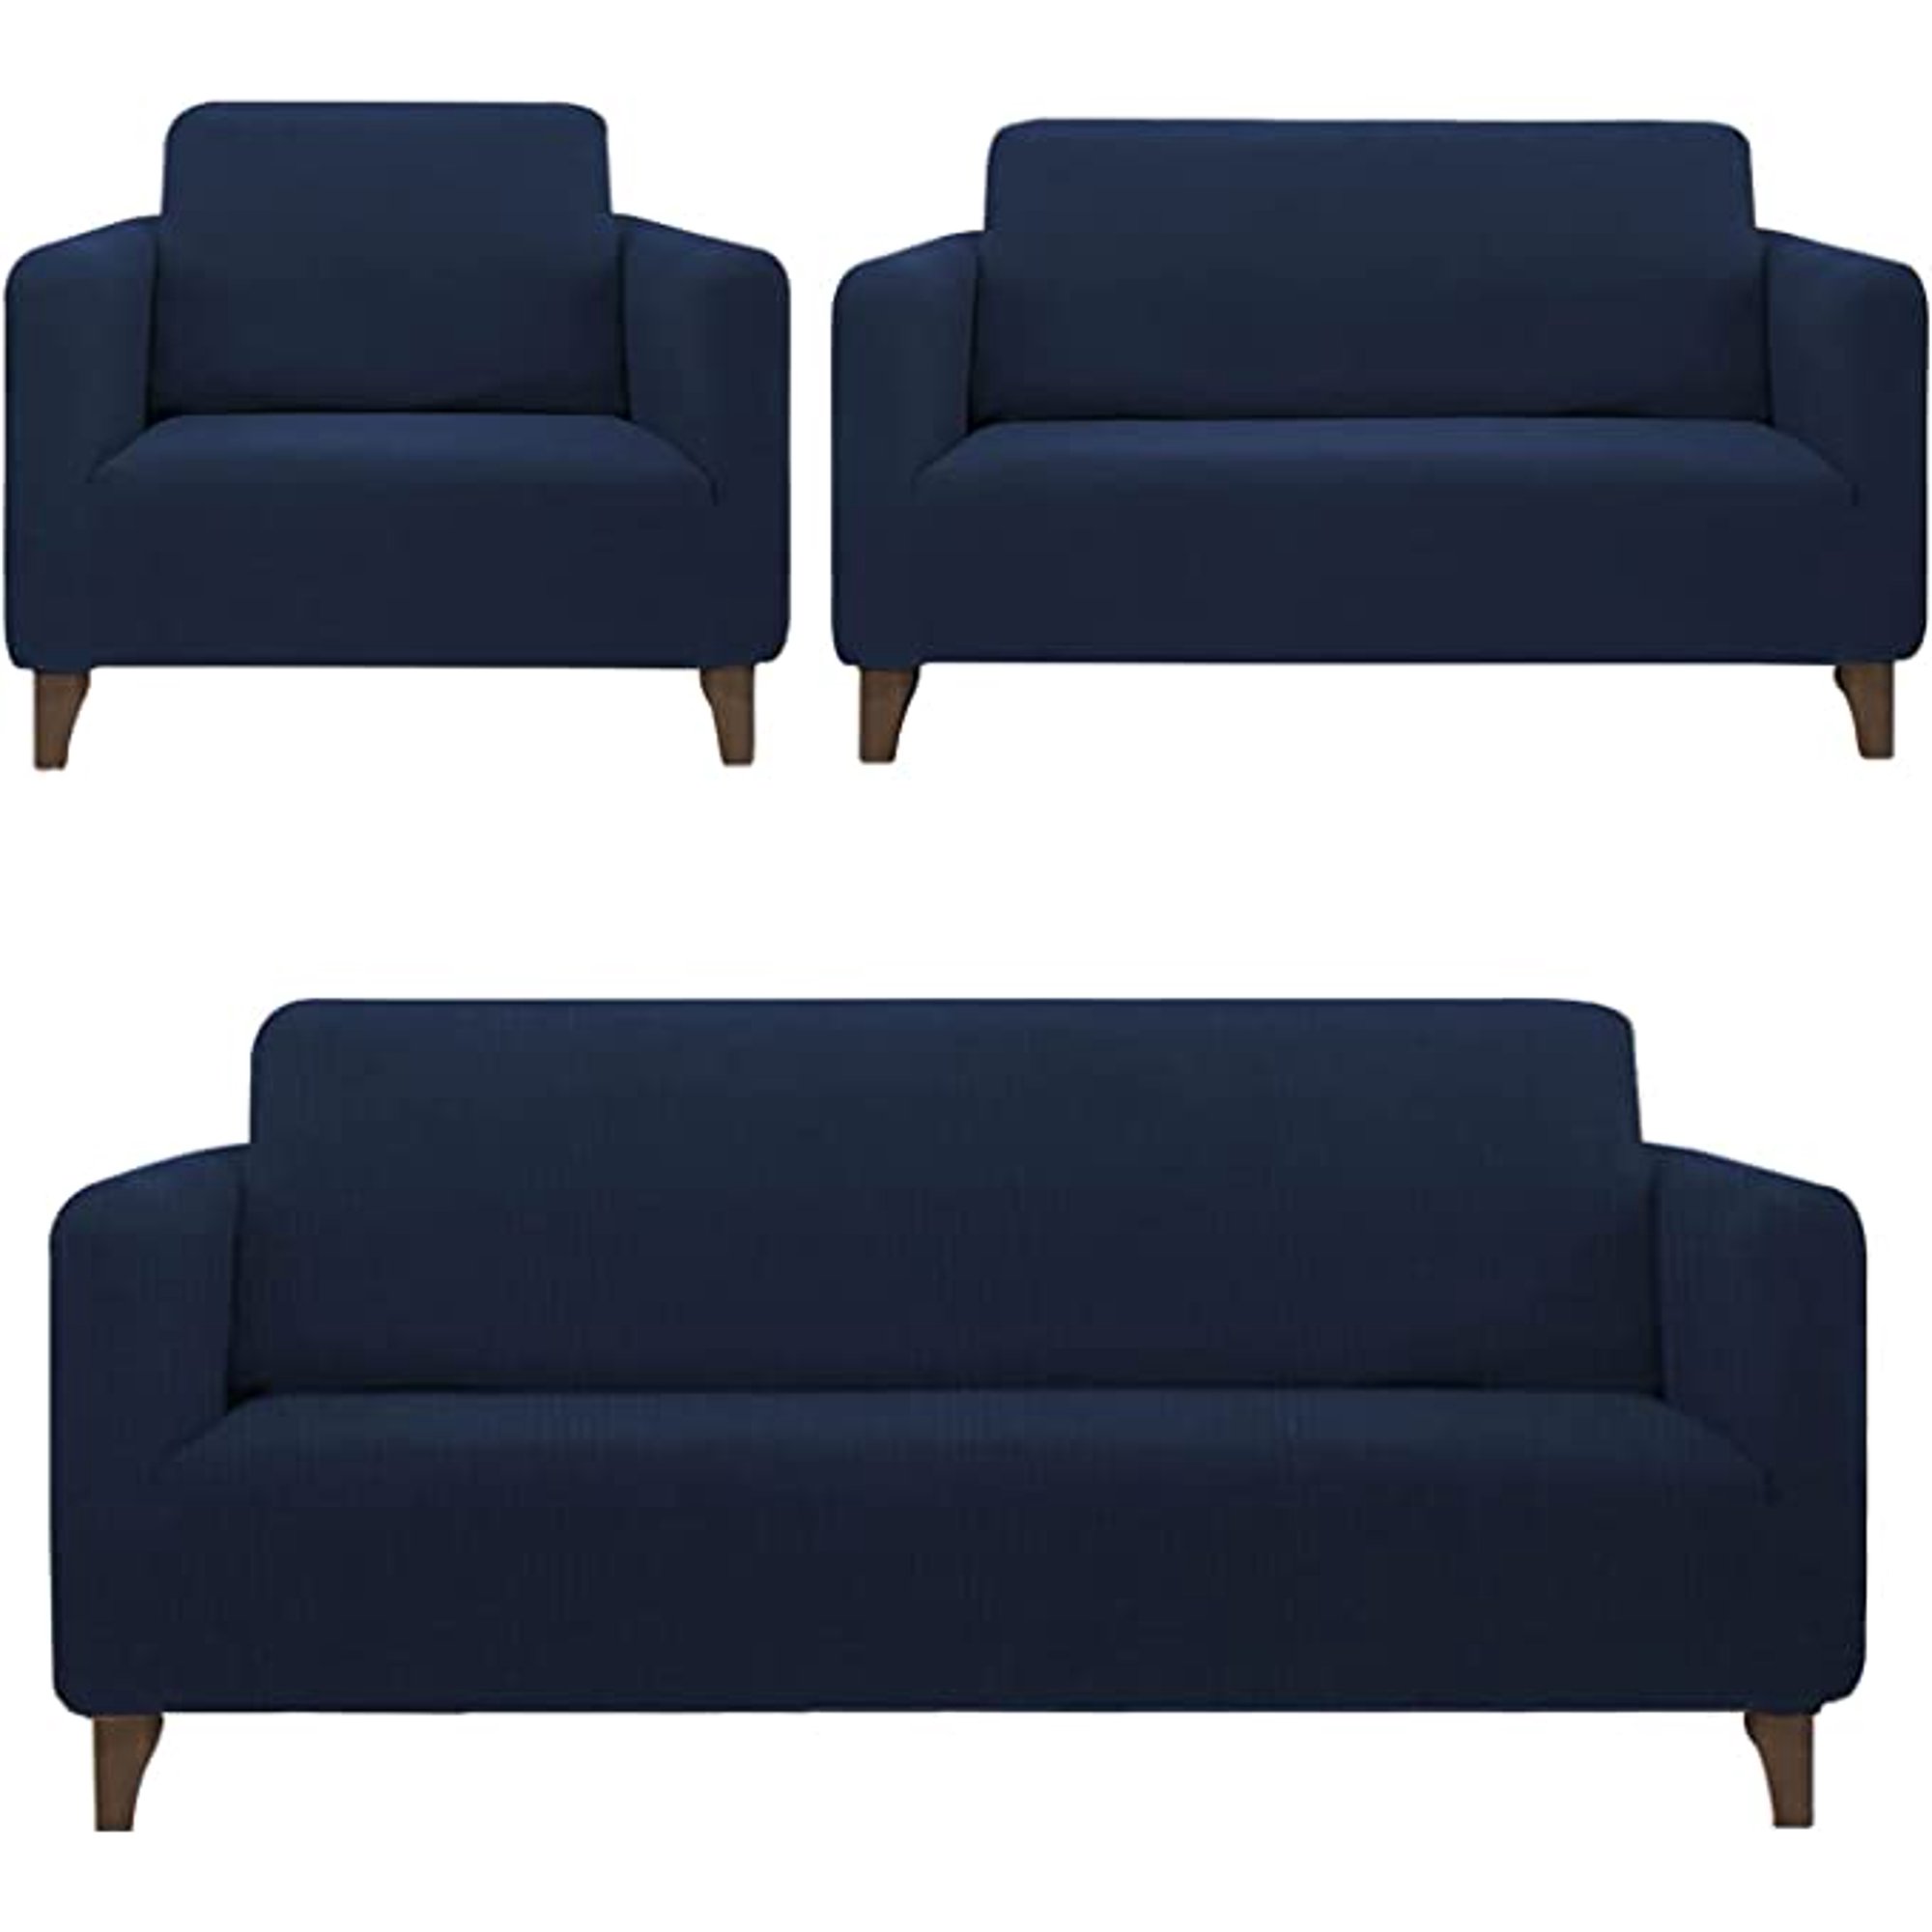 Cubre sofá acolchado Azul marino - Mueblam